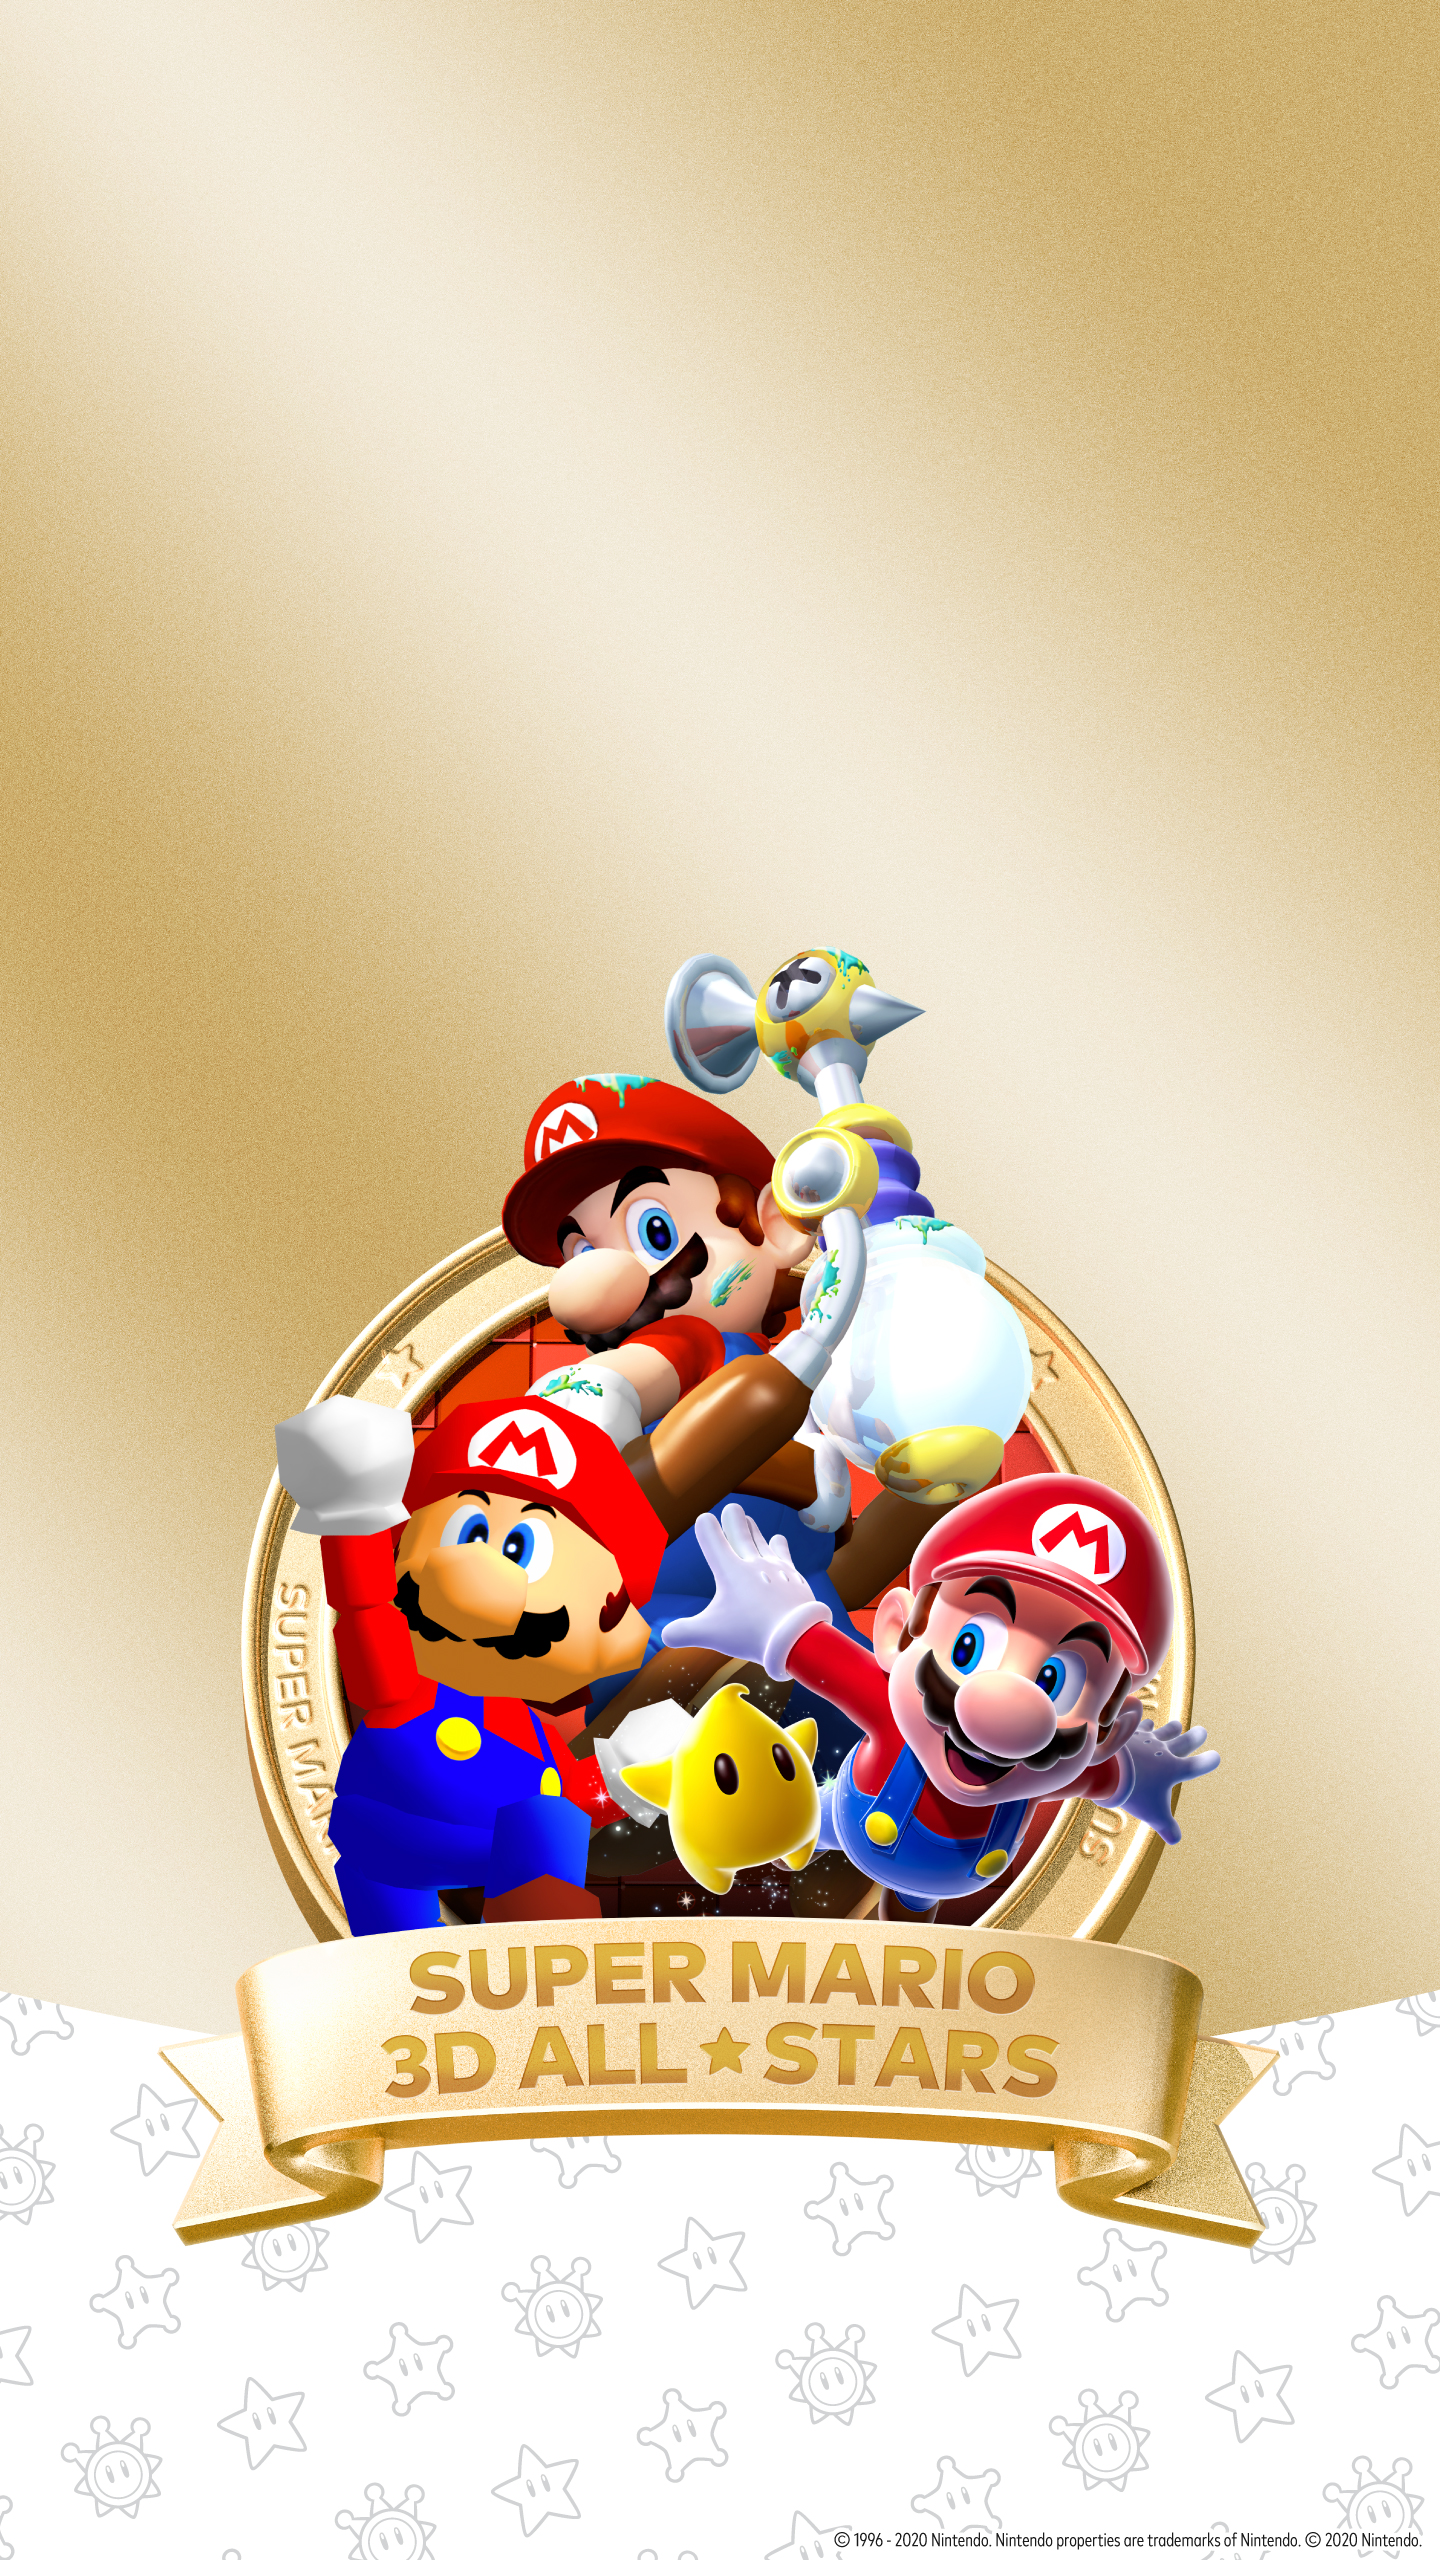 Super Mario 3D All-Stars Phone Wallpaper